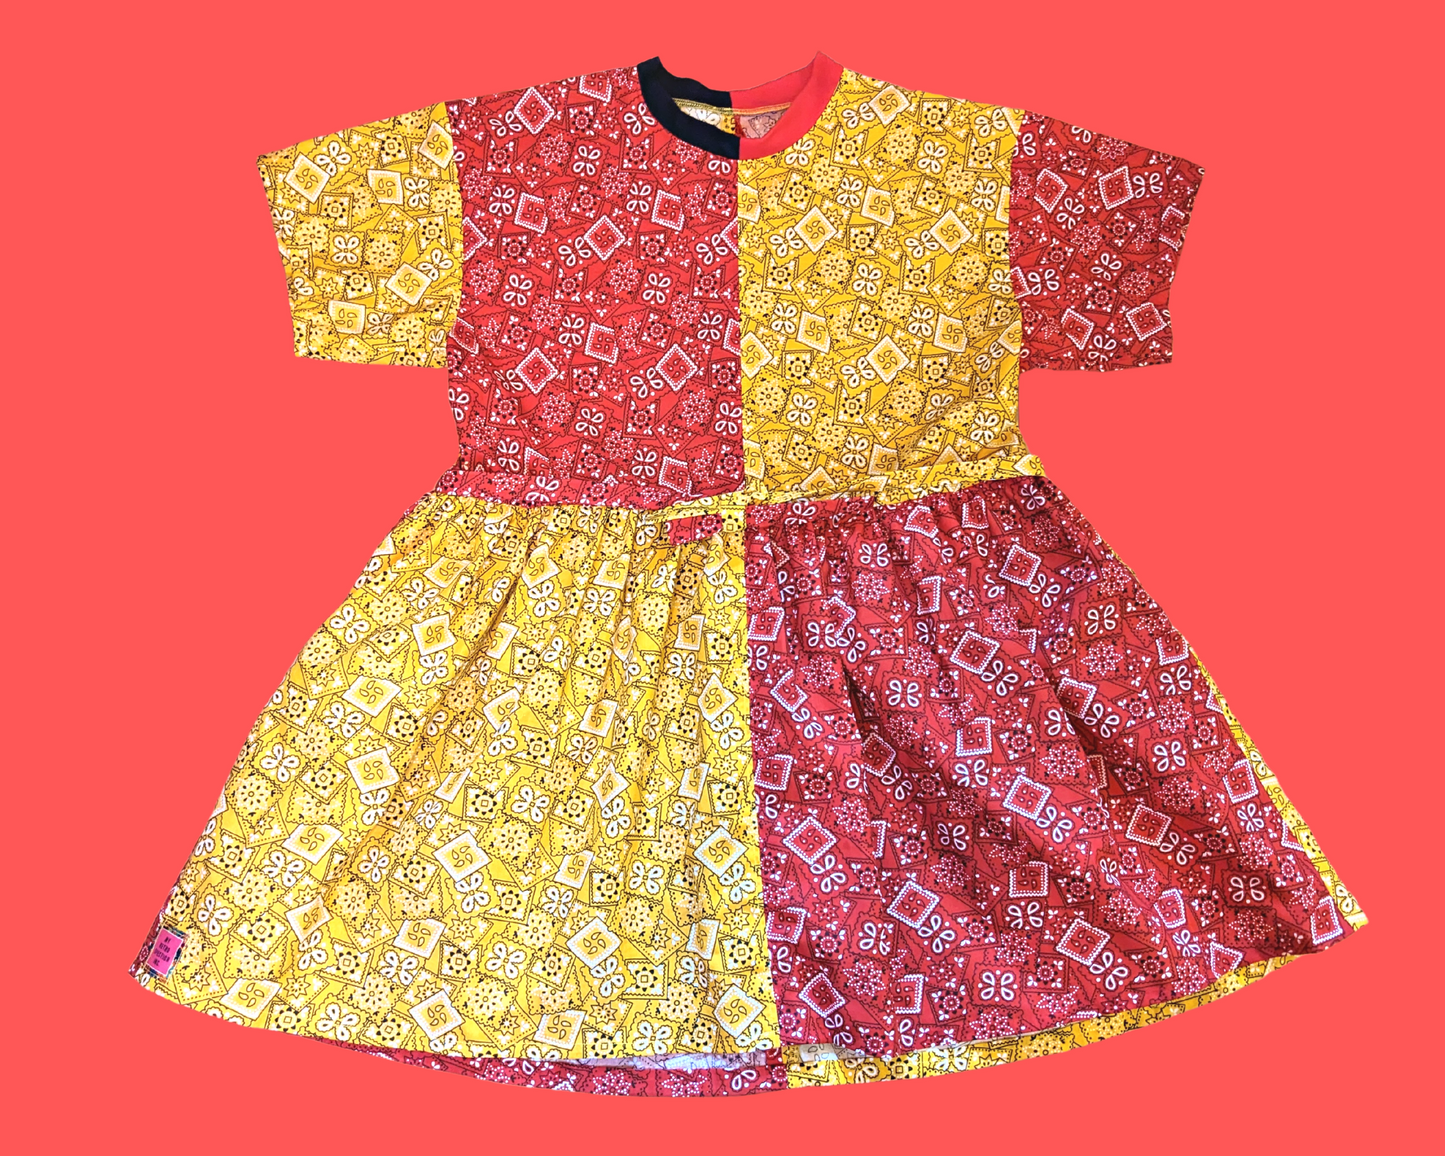 Fait à la main, Upcycled Mix-Matched Paisley jaune et rouge, robe t-shirt en tissu de style bandana Convient SML-XL